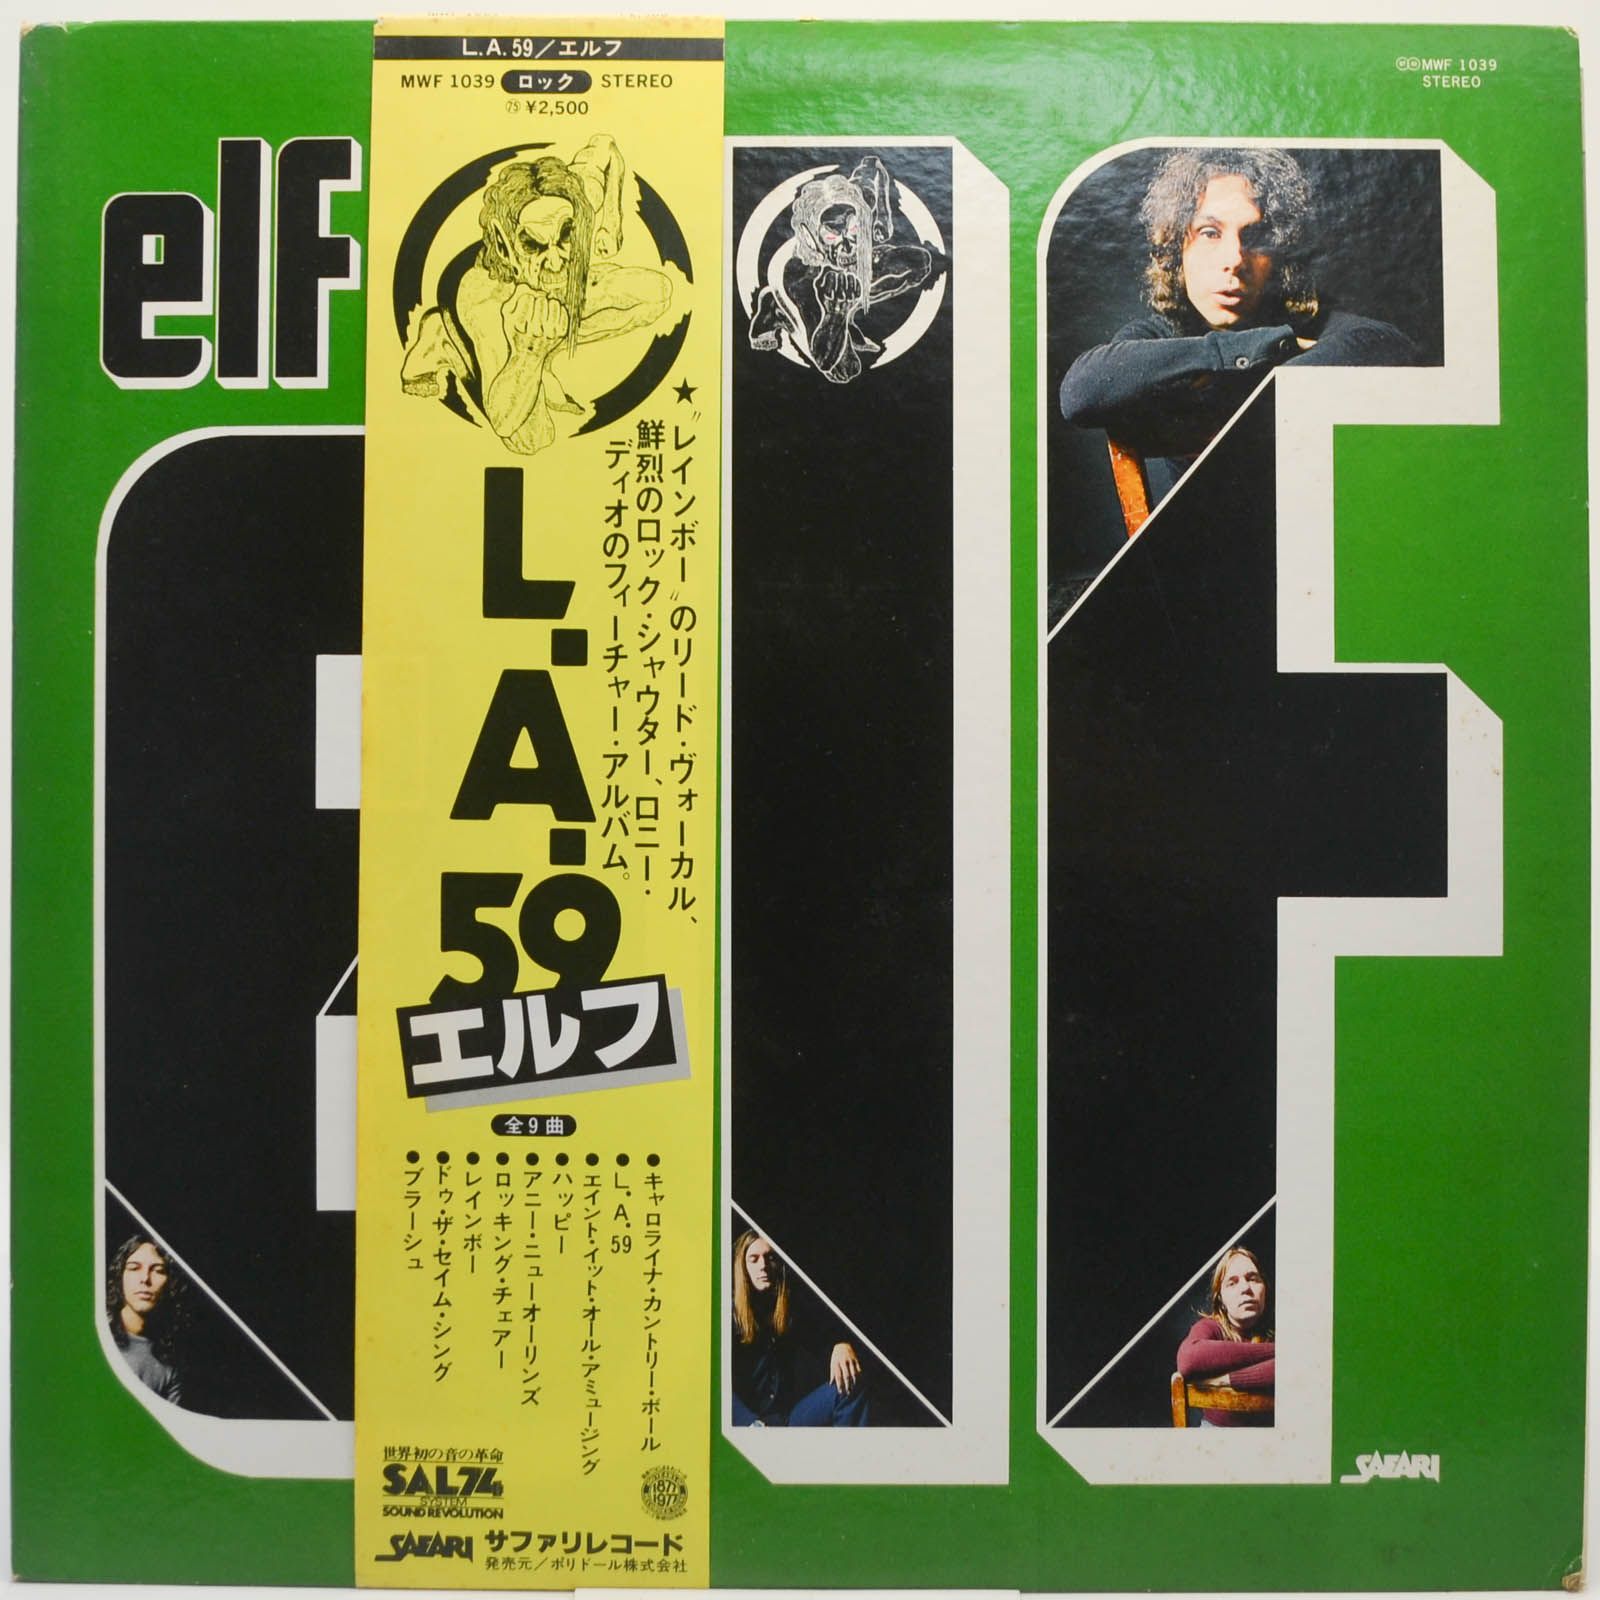 ELF — L.A./59, 1974